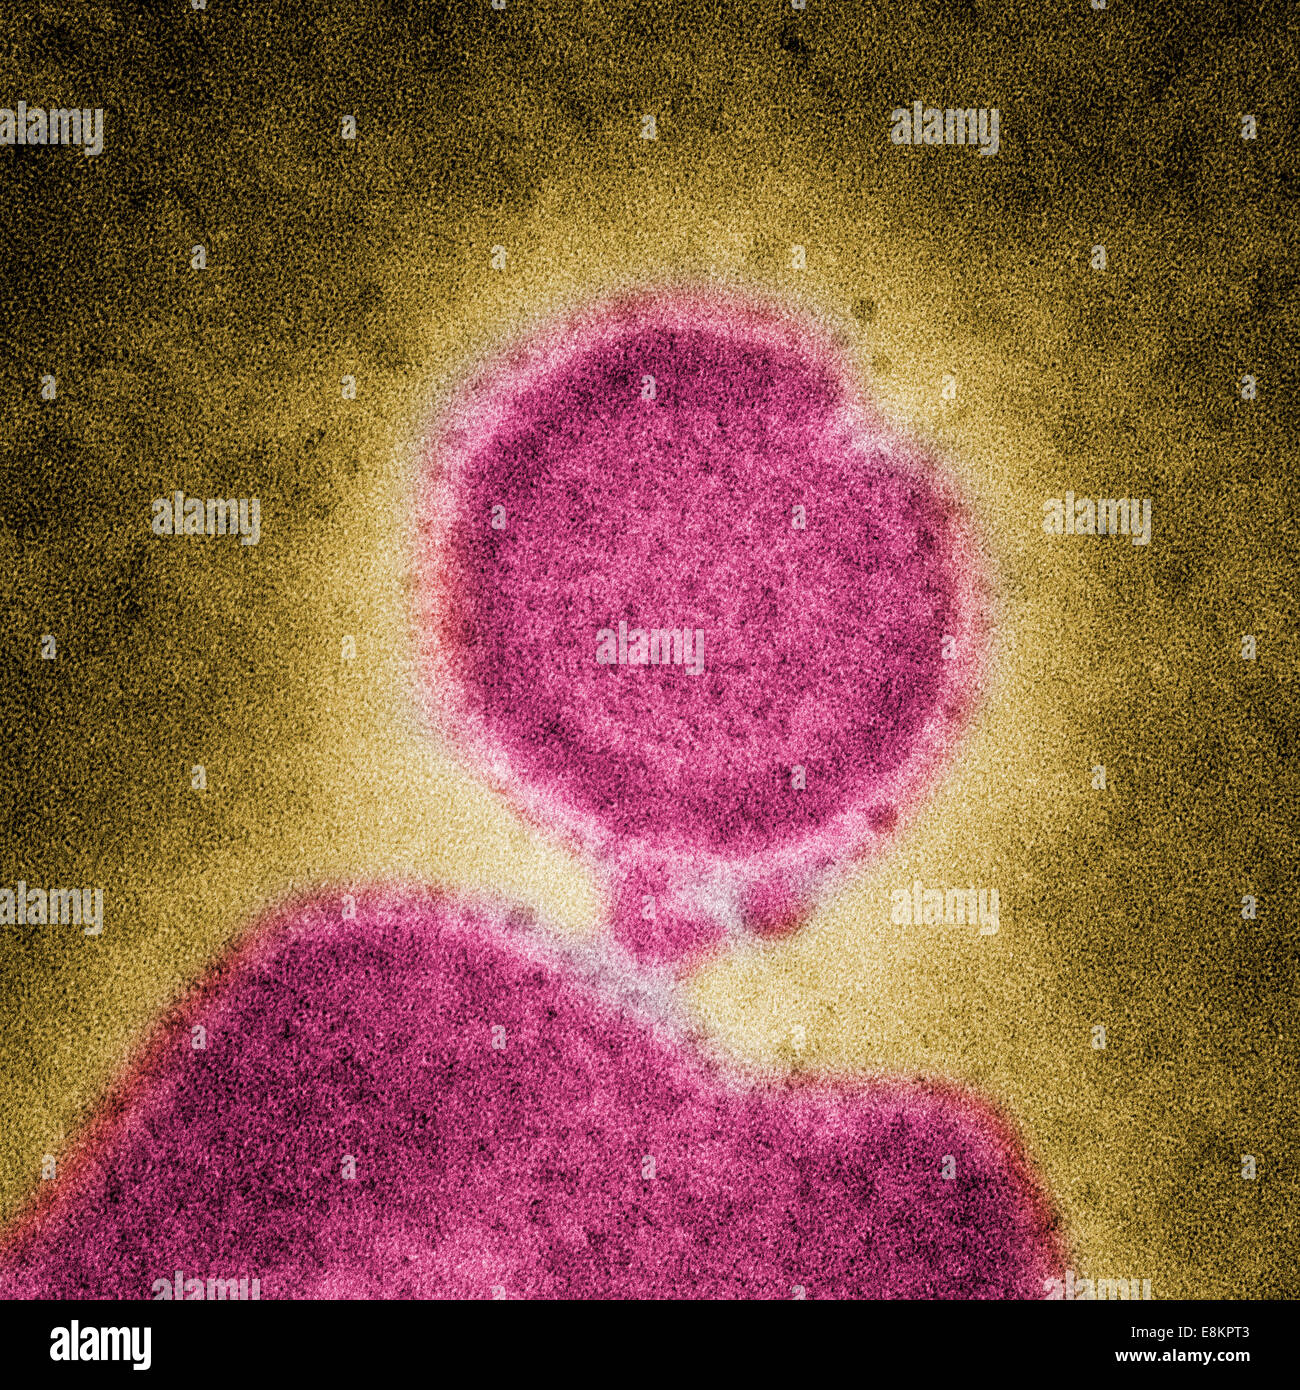 Unter hoher Vergrößerung erfasst diese eingefärbte negativ gefärbten Transmission Electron Schliffbild (TEM) einige der Stockfoto